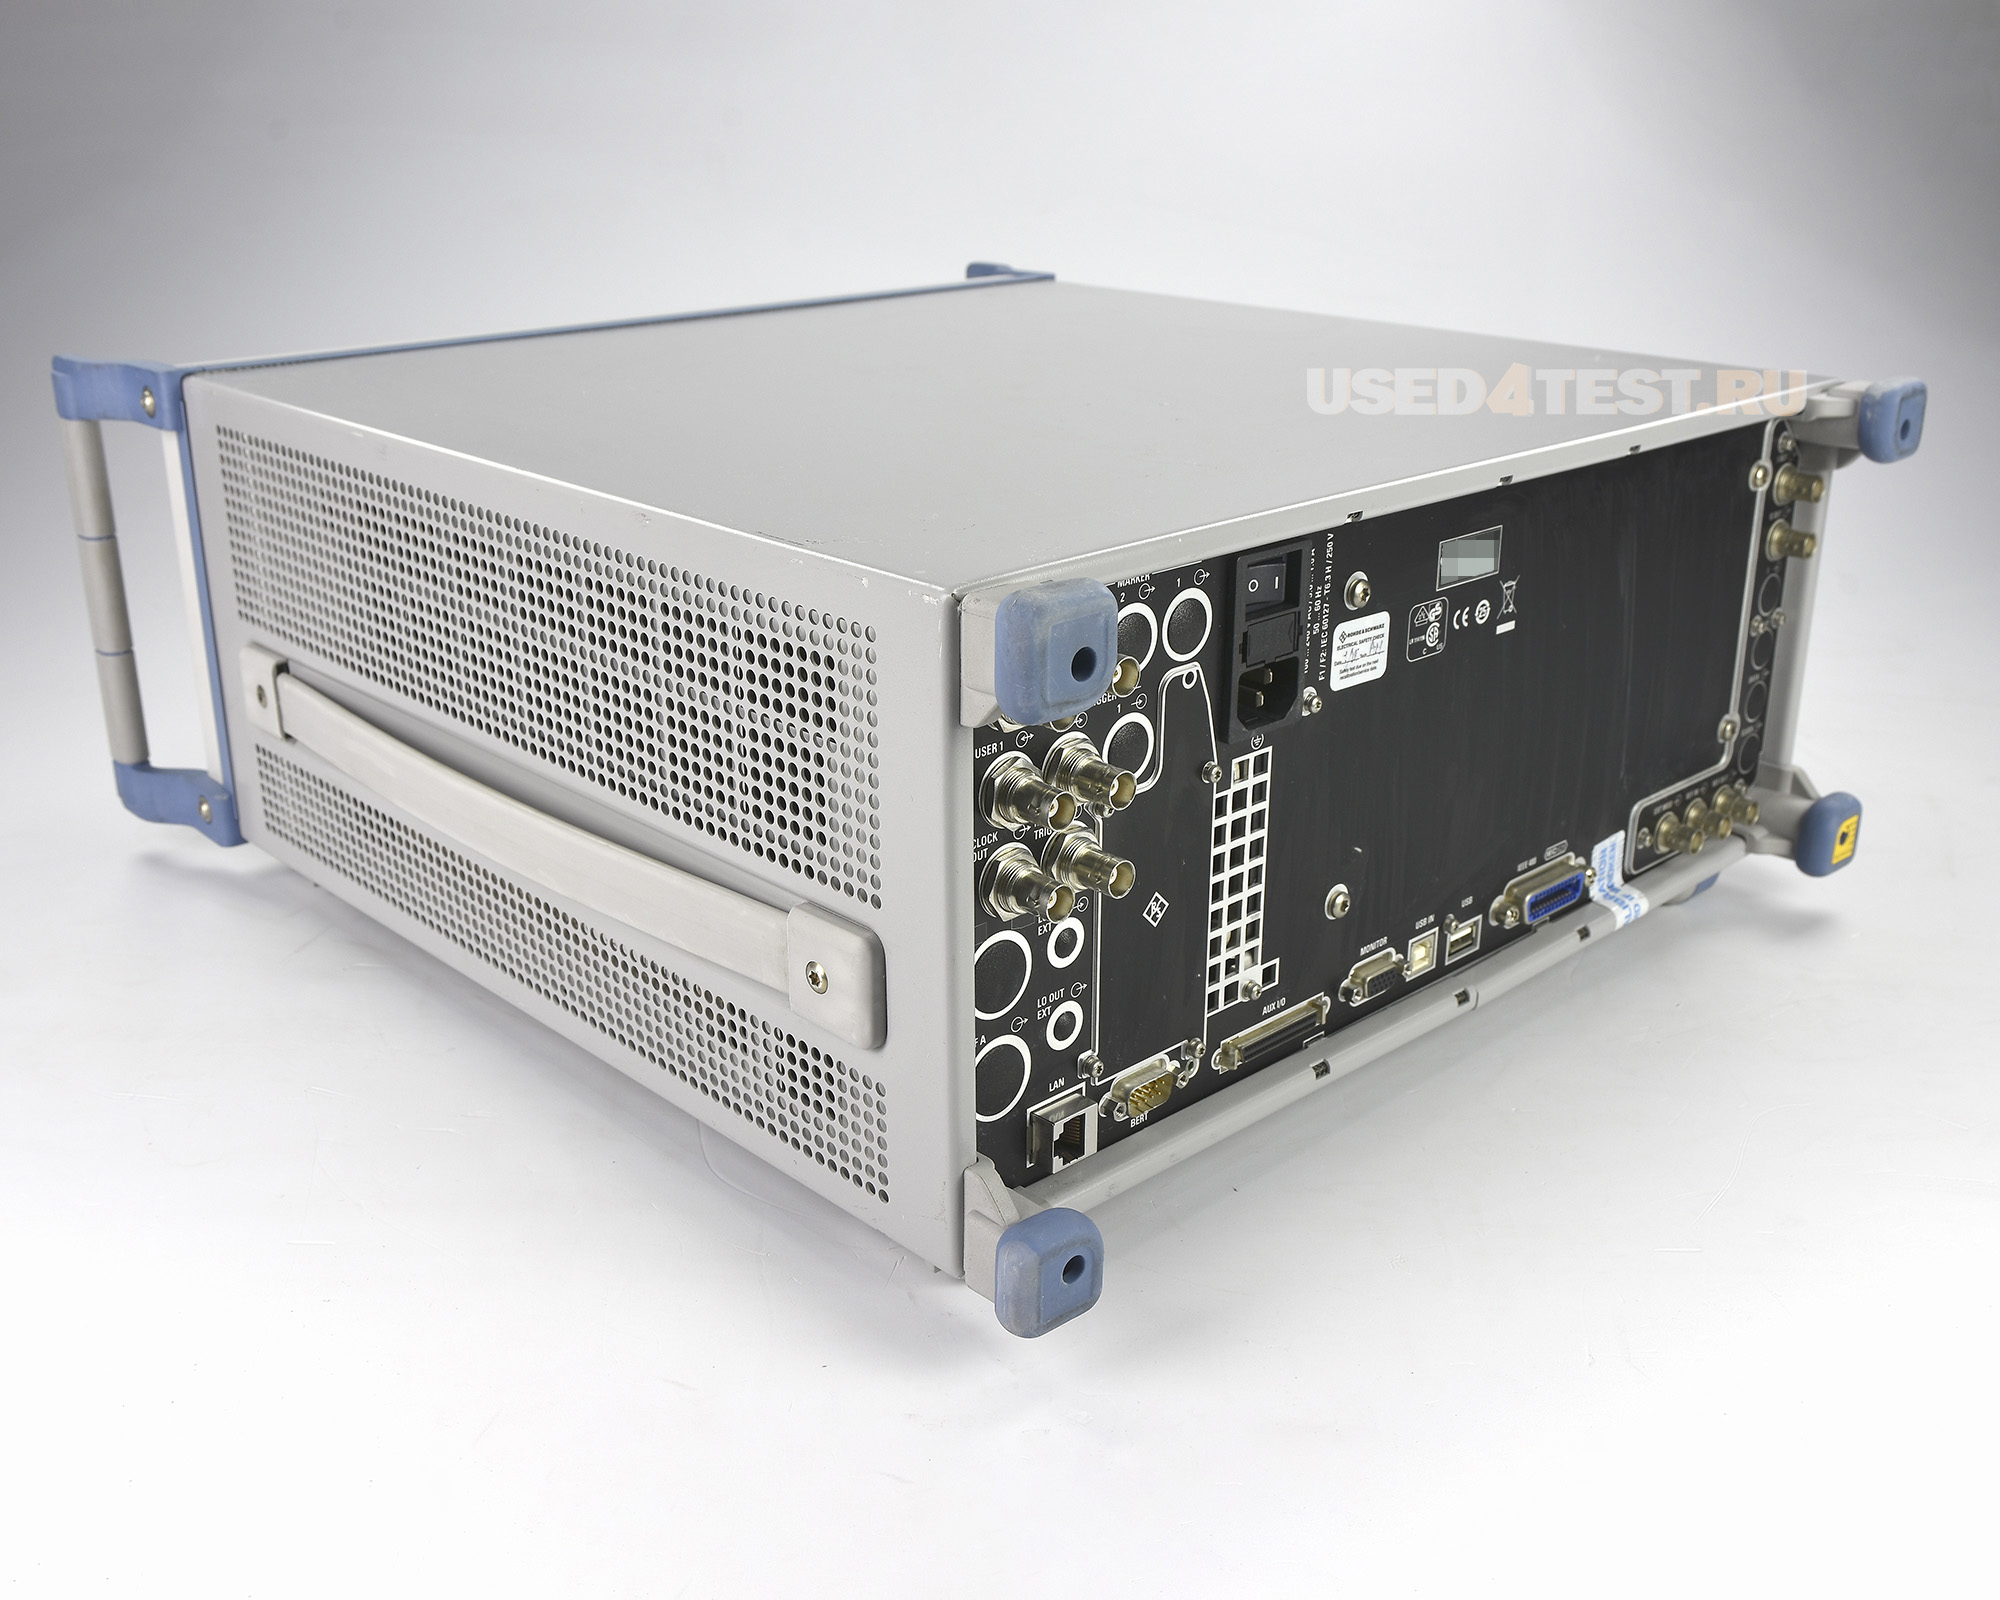 Векторный генератор сигналов
 Rohde & Schwarz SMJ100A
с диапазоном от 100 кГц до 3 ГГц